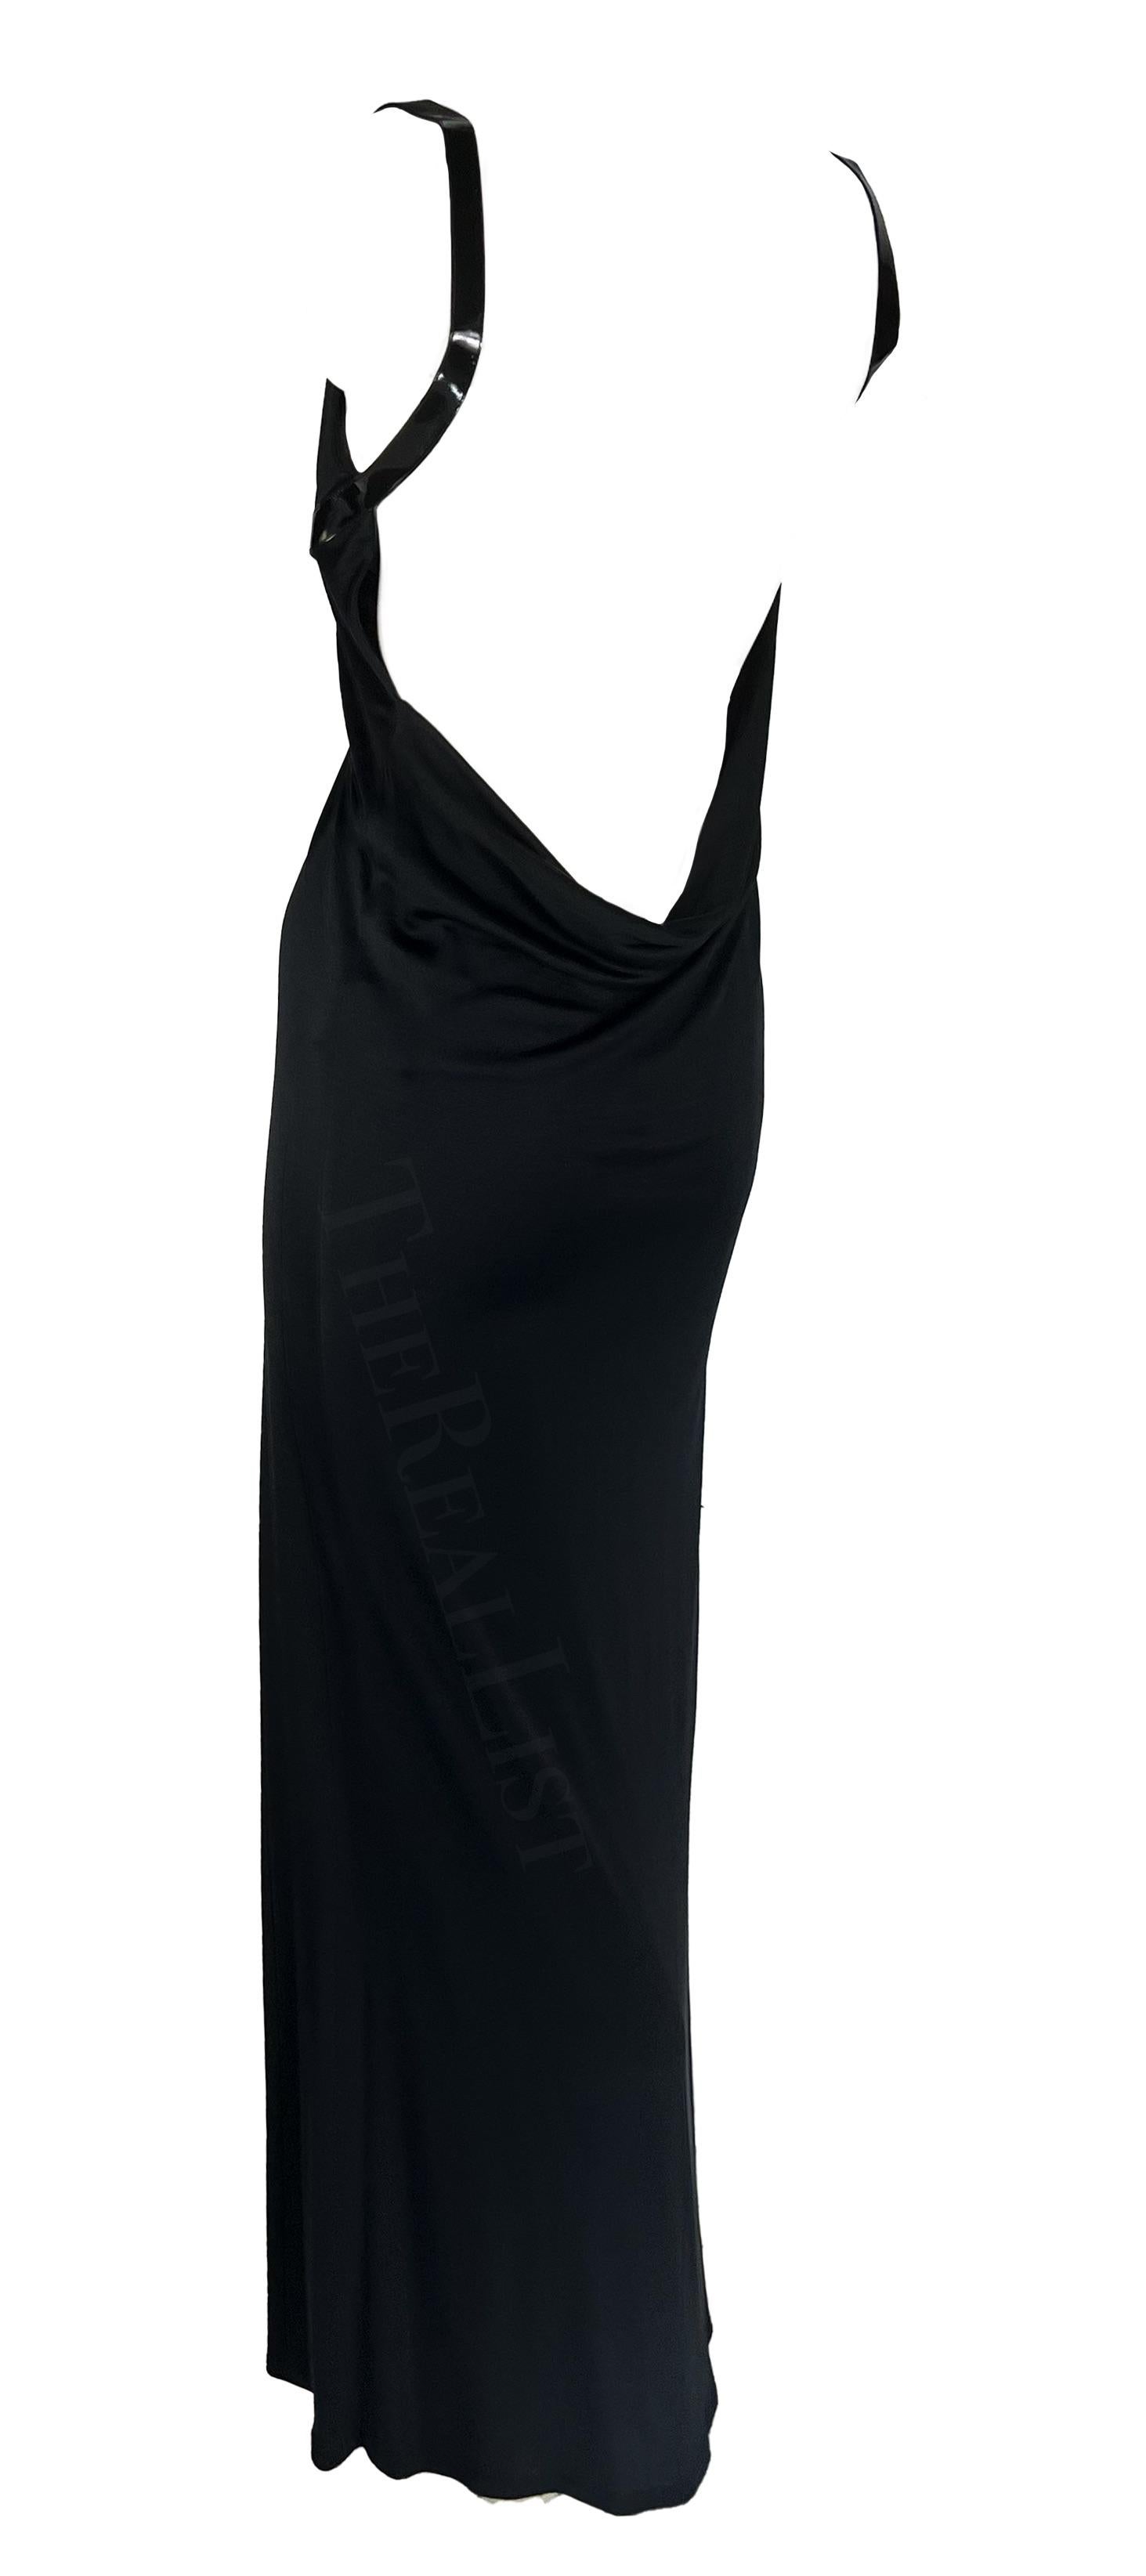 Ich präsentiere ein wunderschönes rückenfreies Kleid aus schwarzer Seide, entworfen von Tom Ford für Gucci im Jahr 1999. Die Lacklederriemen wickeln sich elegant vom Rundhalsausschnitt um die Schultern und hinten unter der Brust und bilden ein